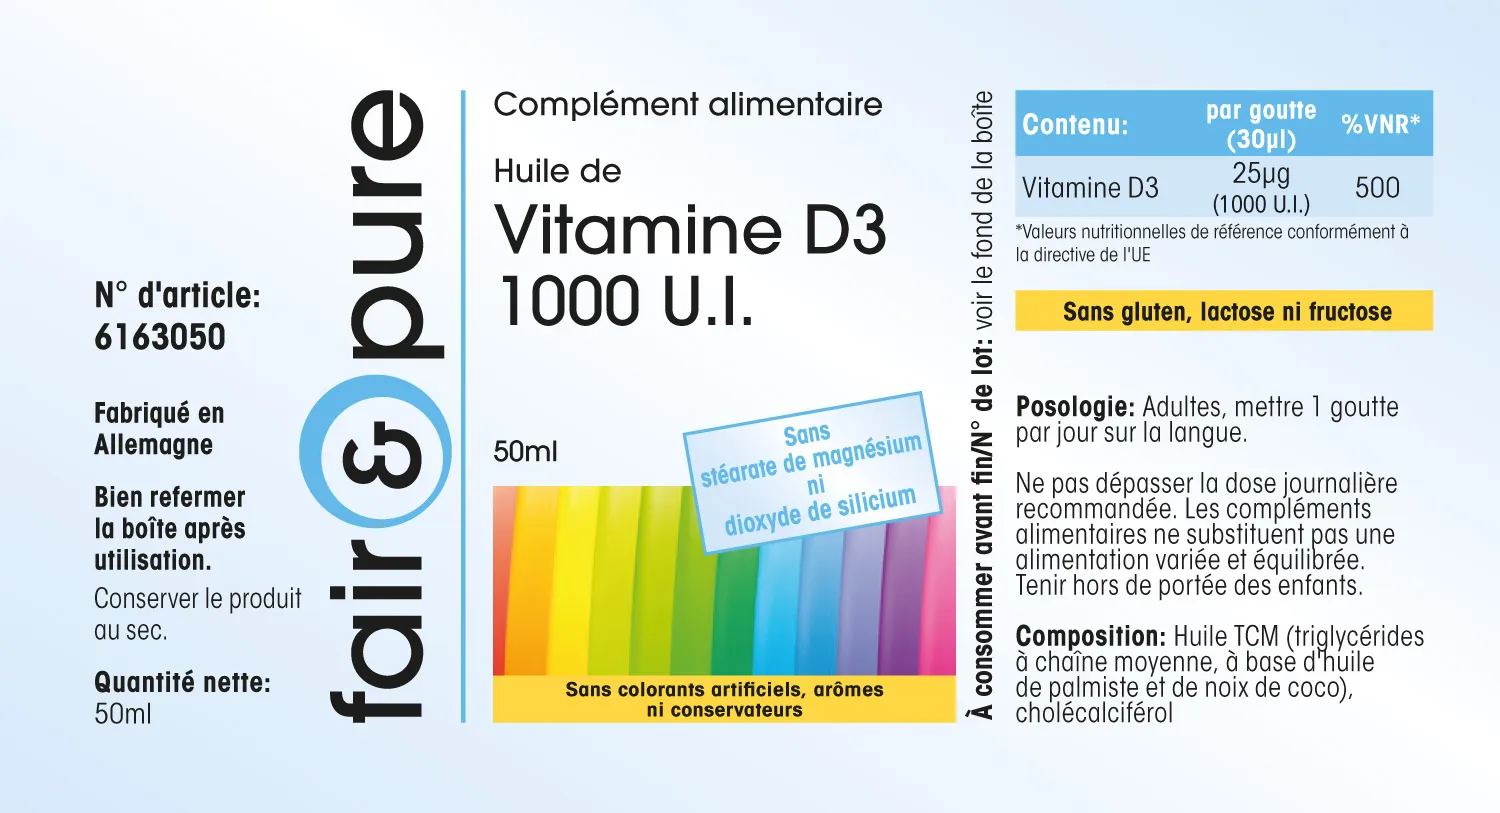 Vitamin D3 liquid 1000 I.U.